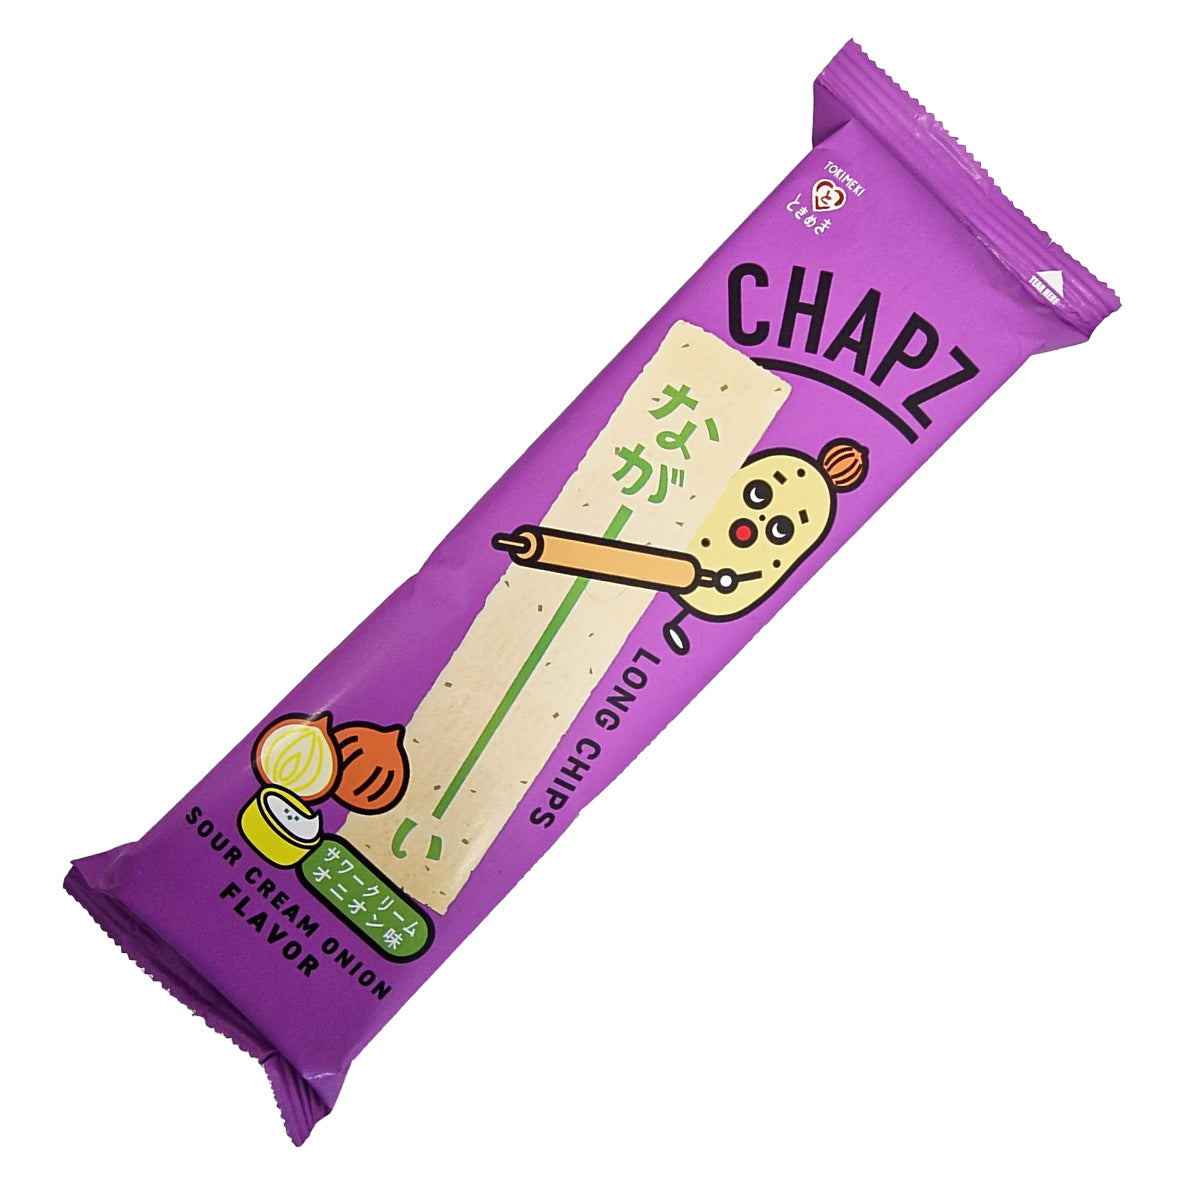 Chapz Long chips - Sour Cream Onion Flavor